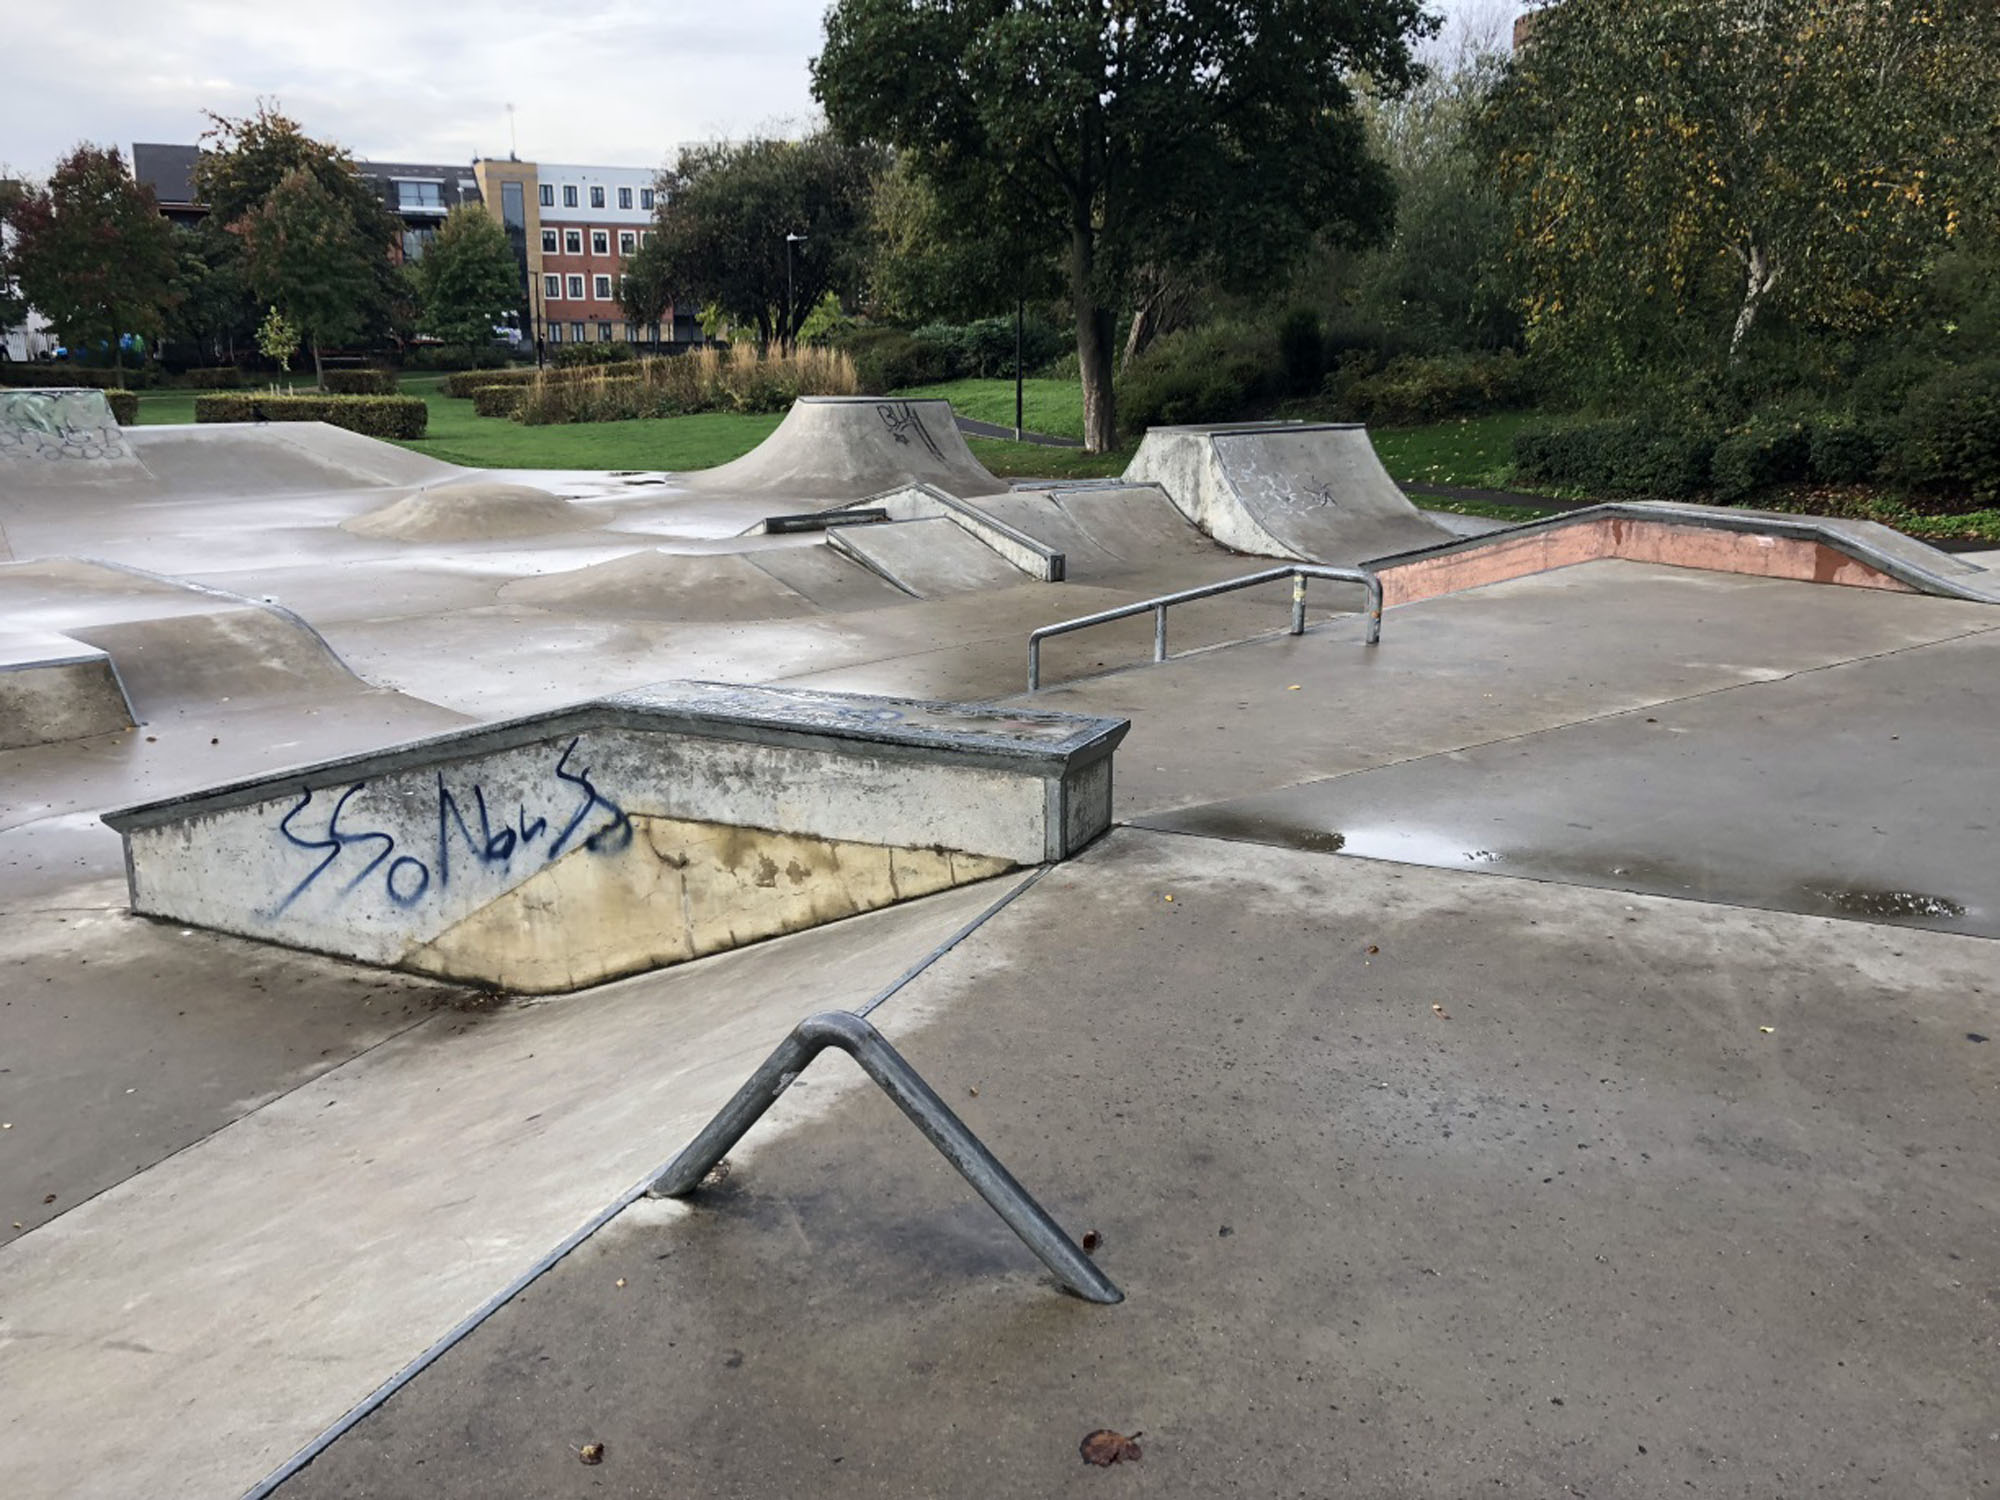 aylesbury vale skatepark review tips skateboarding in buckinghamshire u k